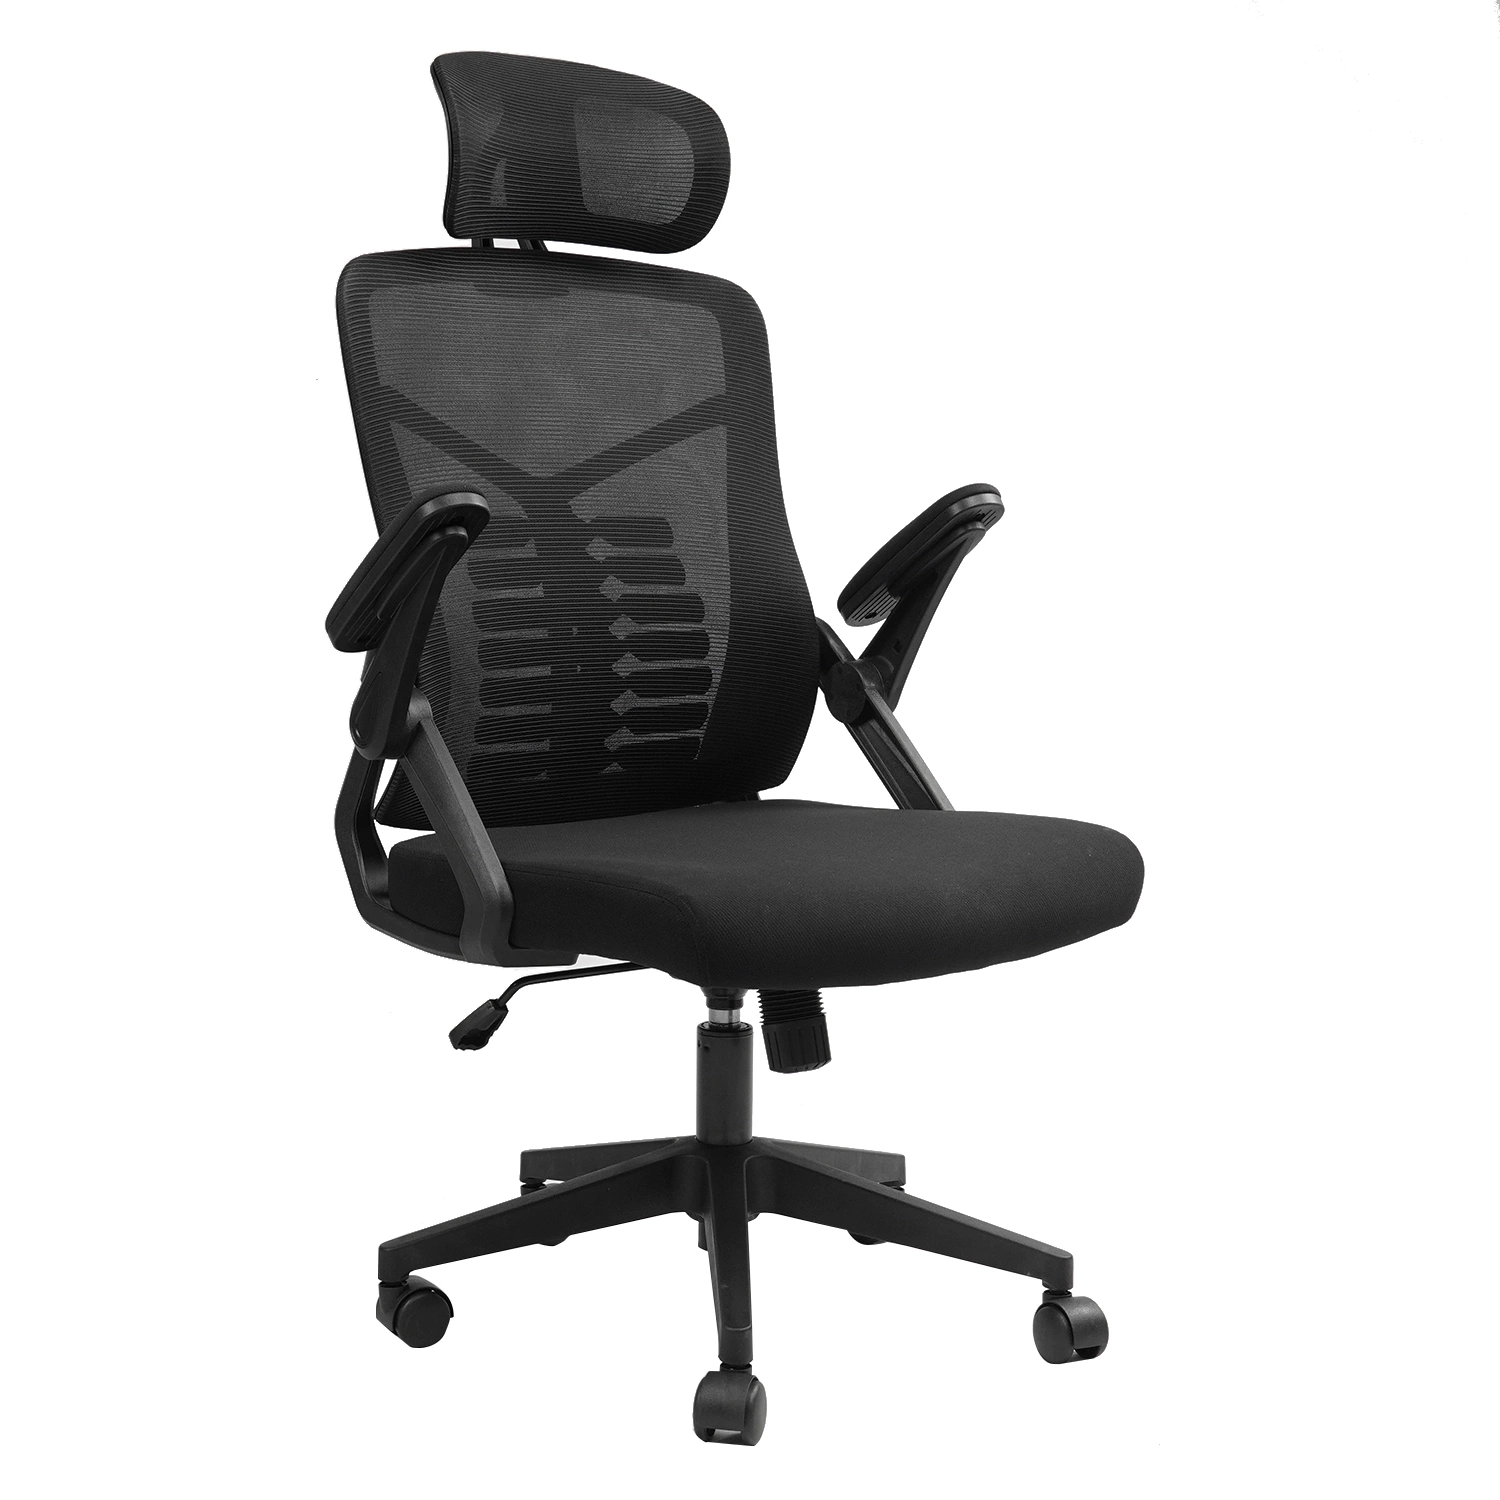 Chaise de bureau en maille, chaise de bureau ergonomique avec soutien lombaire réglable et accoudoirs rabattables, siège large confortable, chaise de bureau informatique à dossier haut.